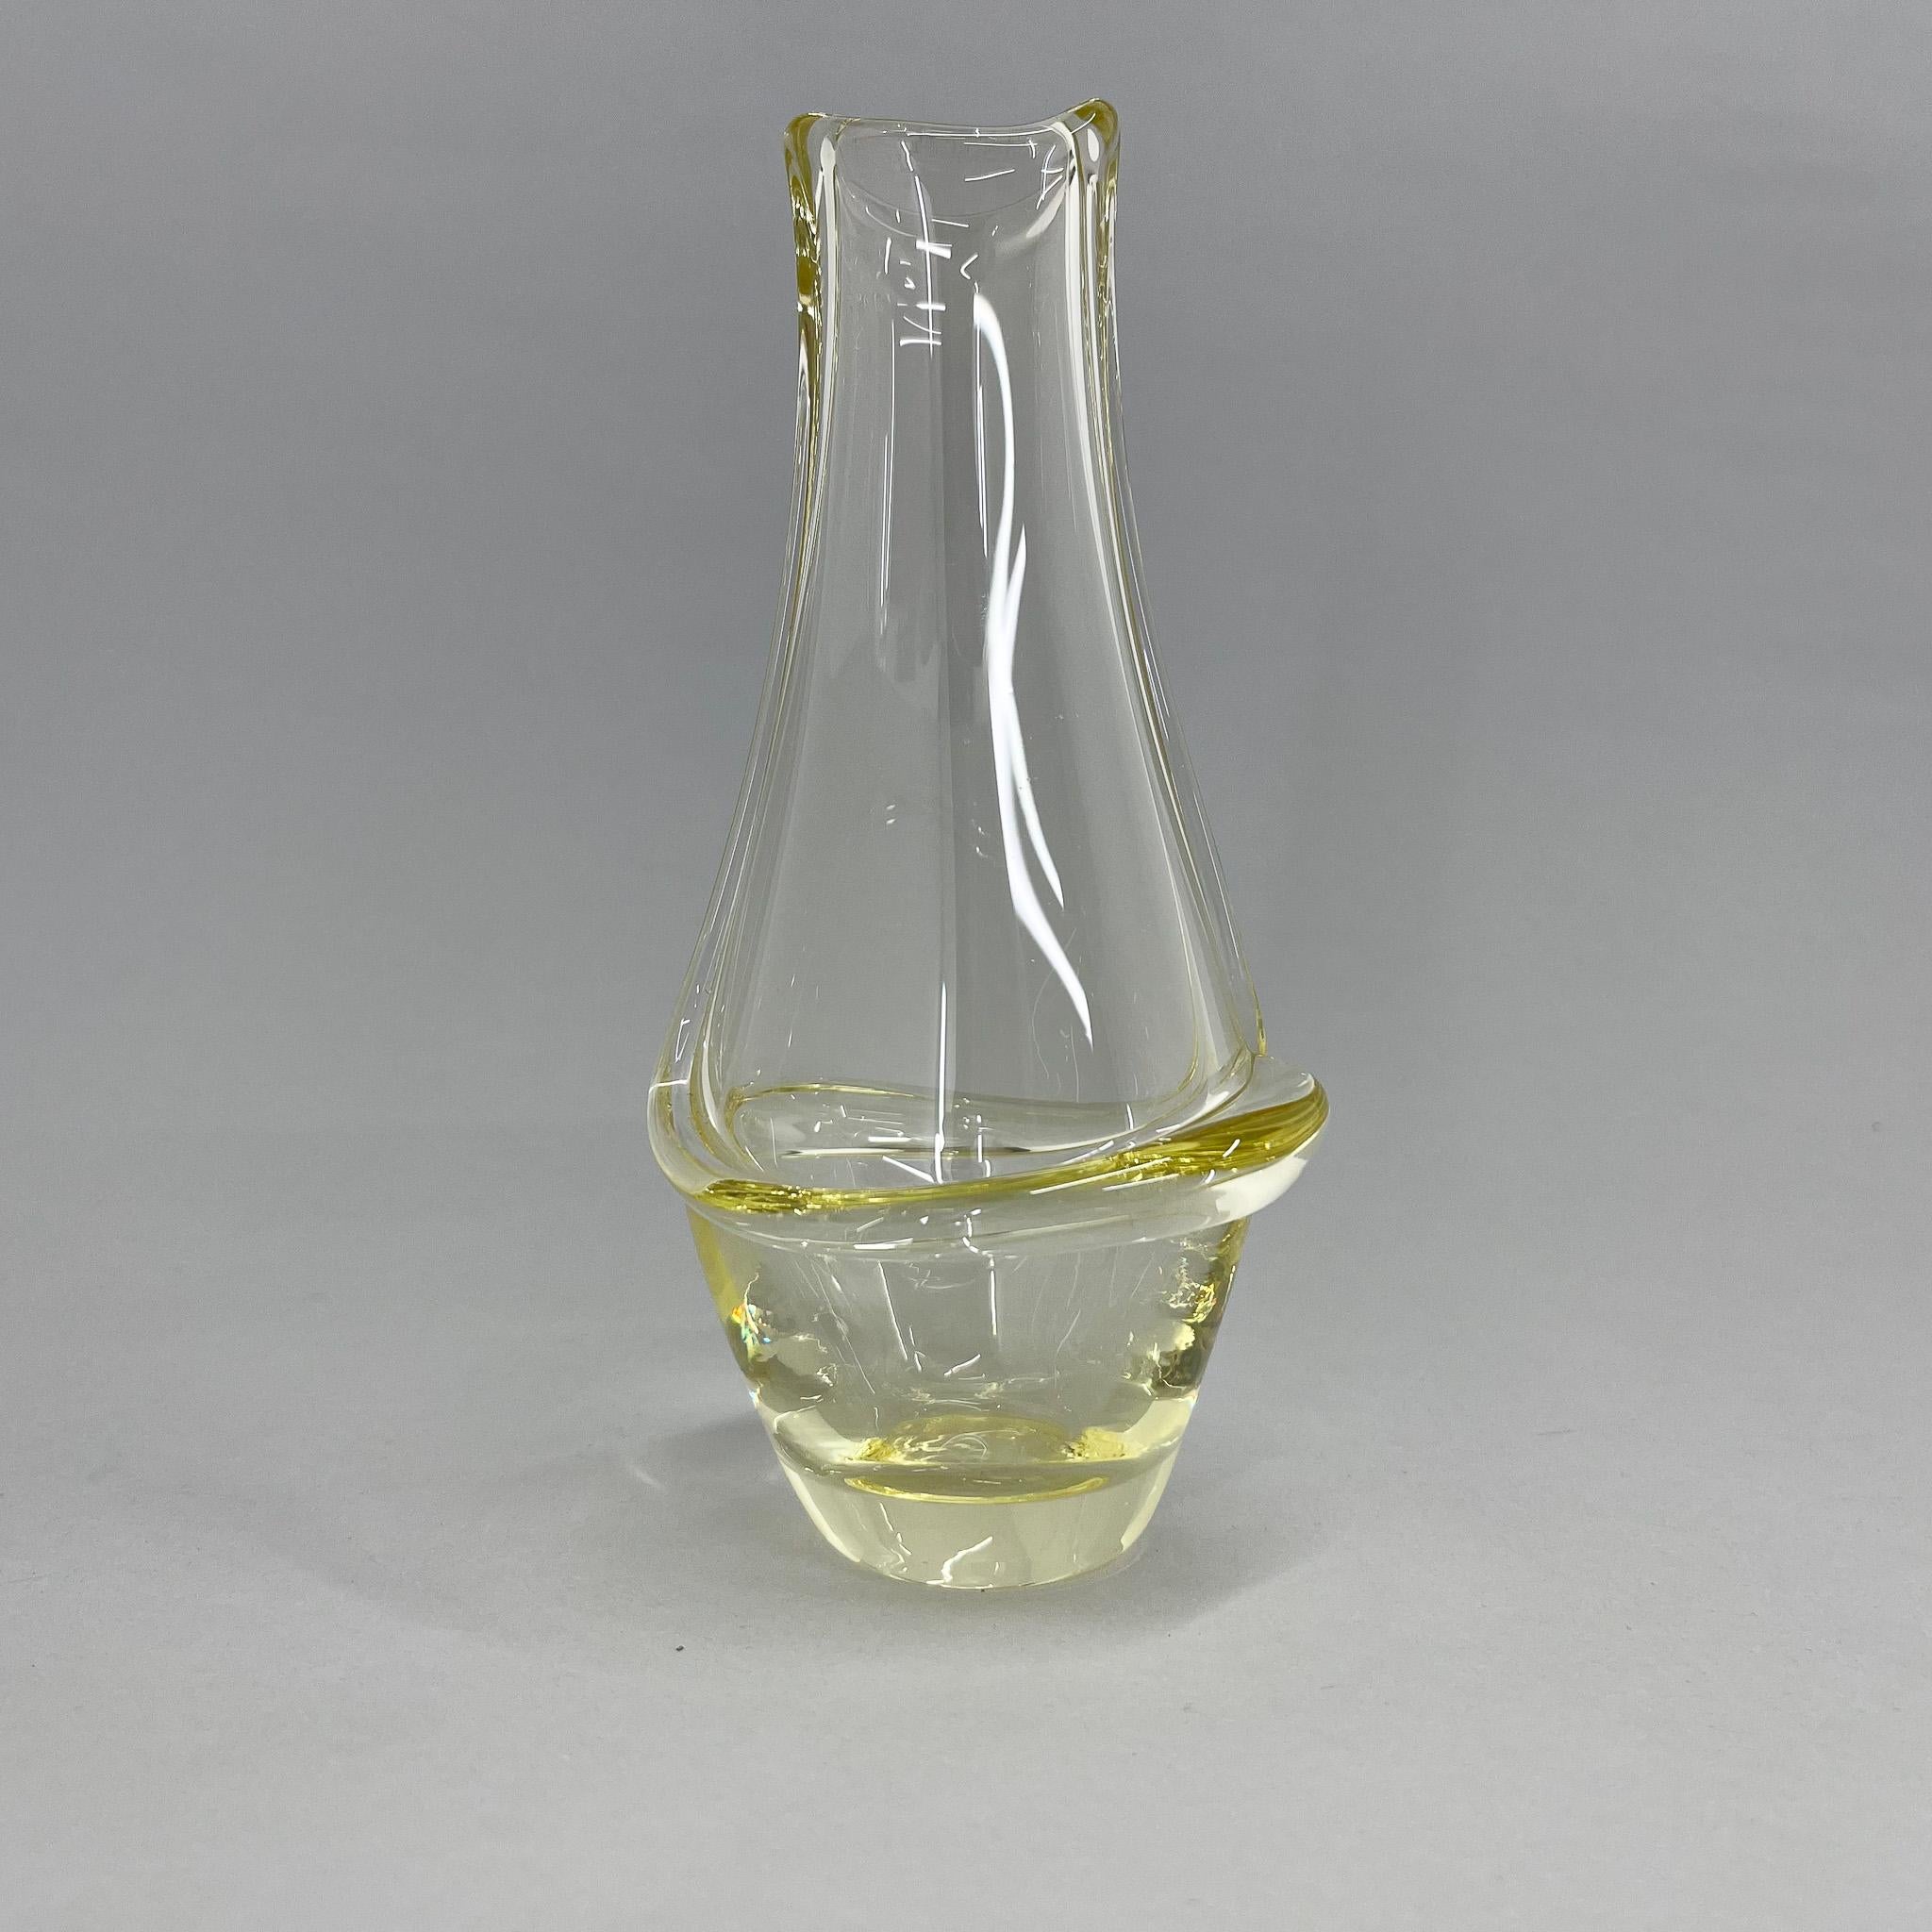 Czech Mid-Century Design Small Vase by Frantisek Zemek for Mstisov Glassworks, 1960's For Sale